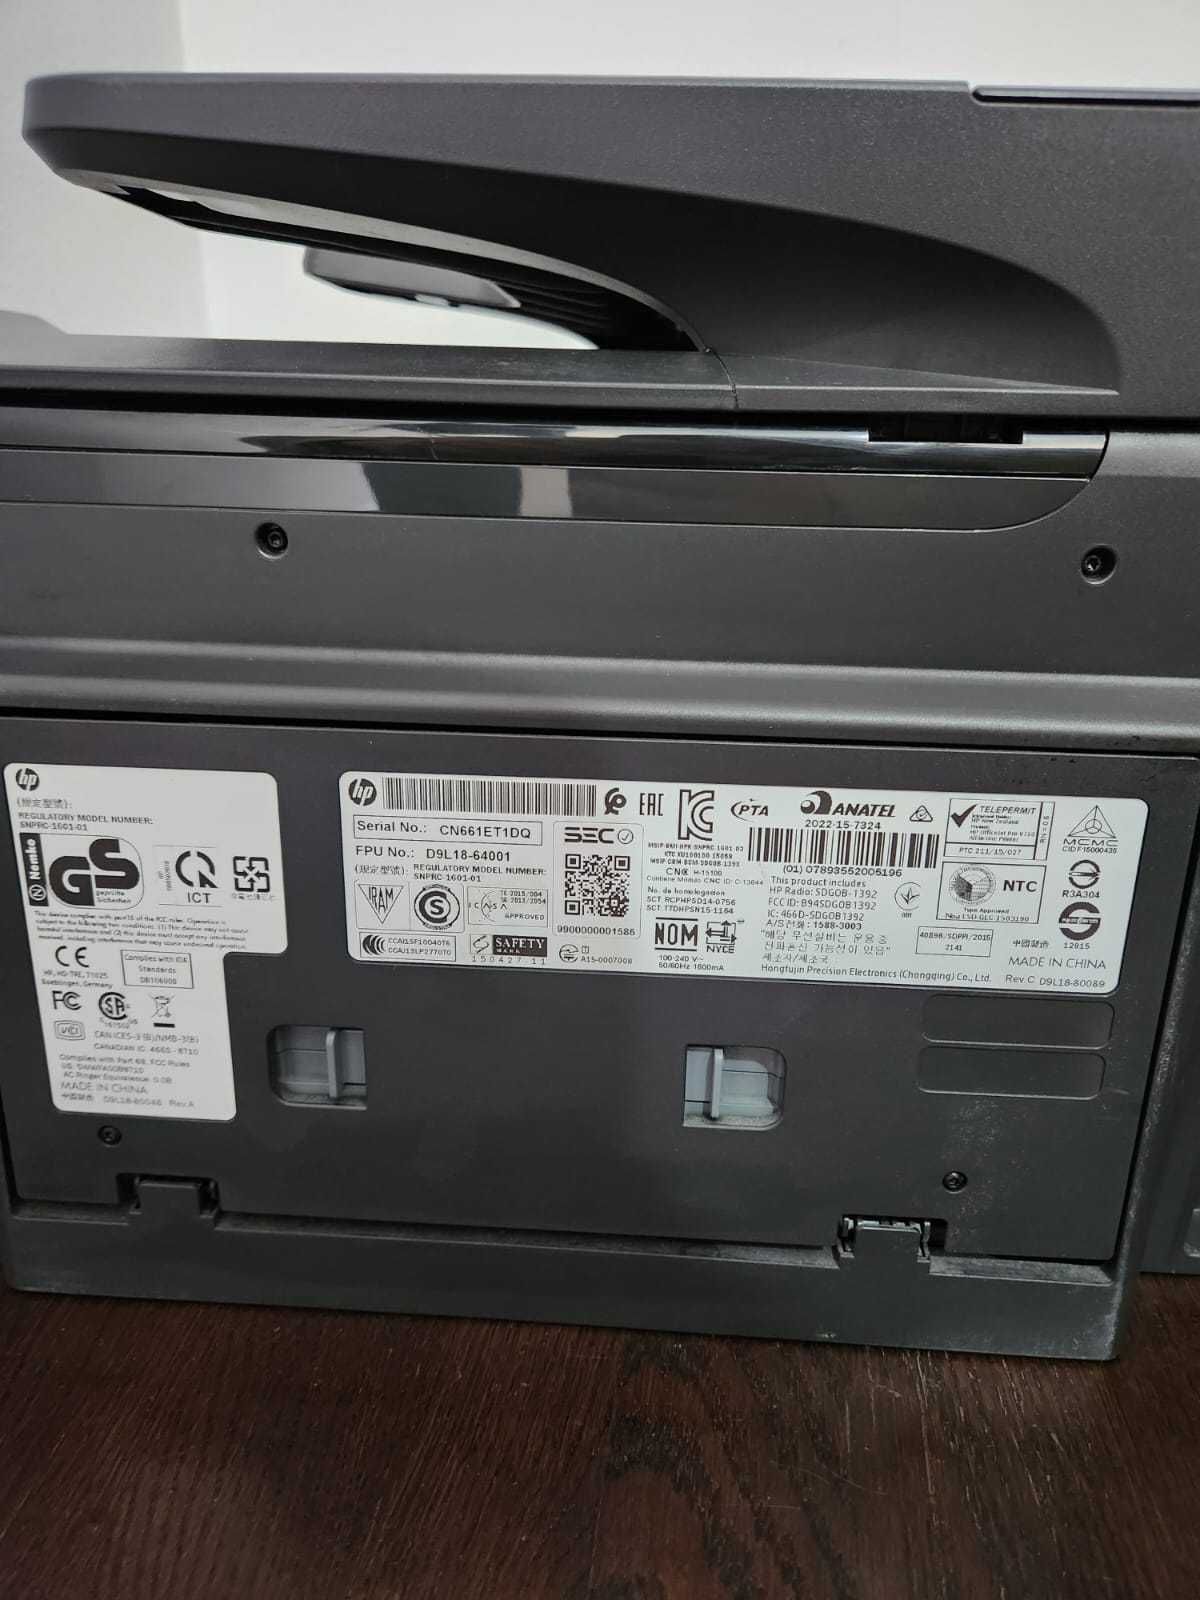 Imprimanta+scanner HP OfficeJet Pro 8710 All-in-One Inkjet  Wi-Fi/FAX